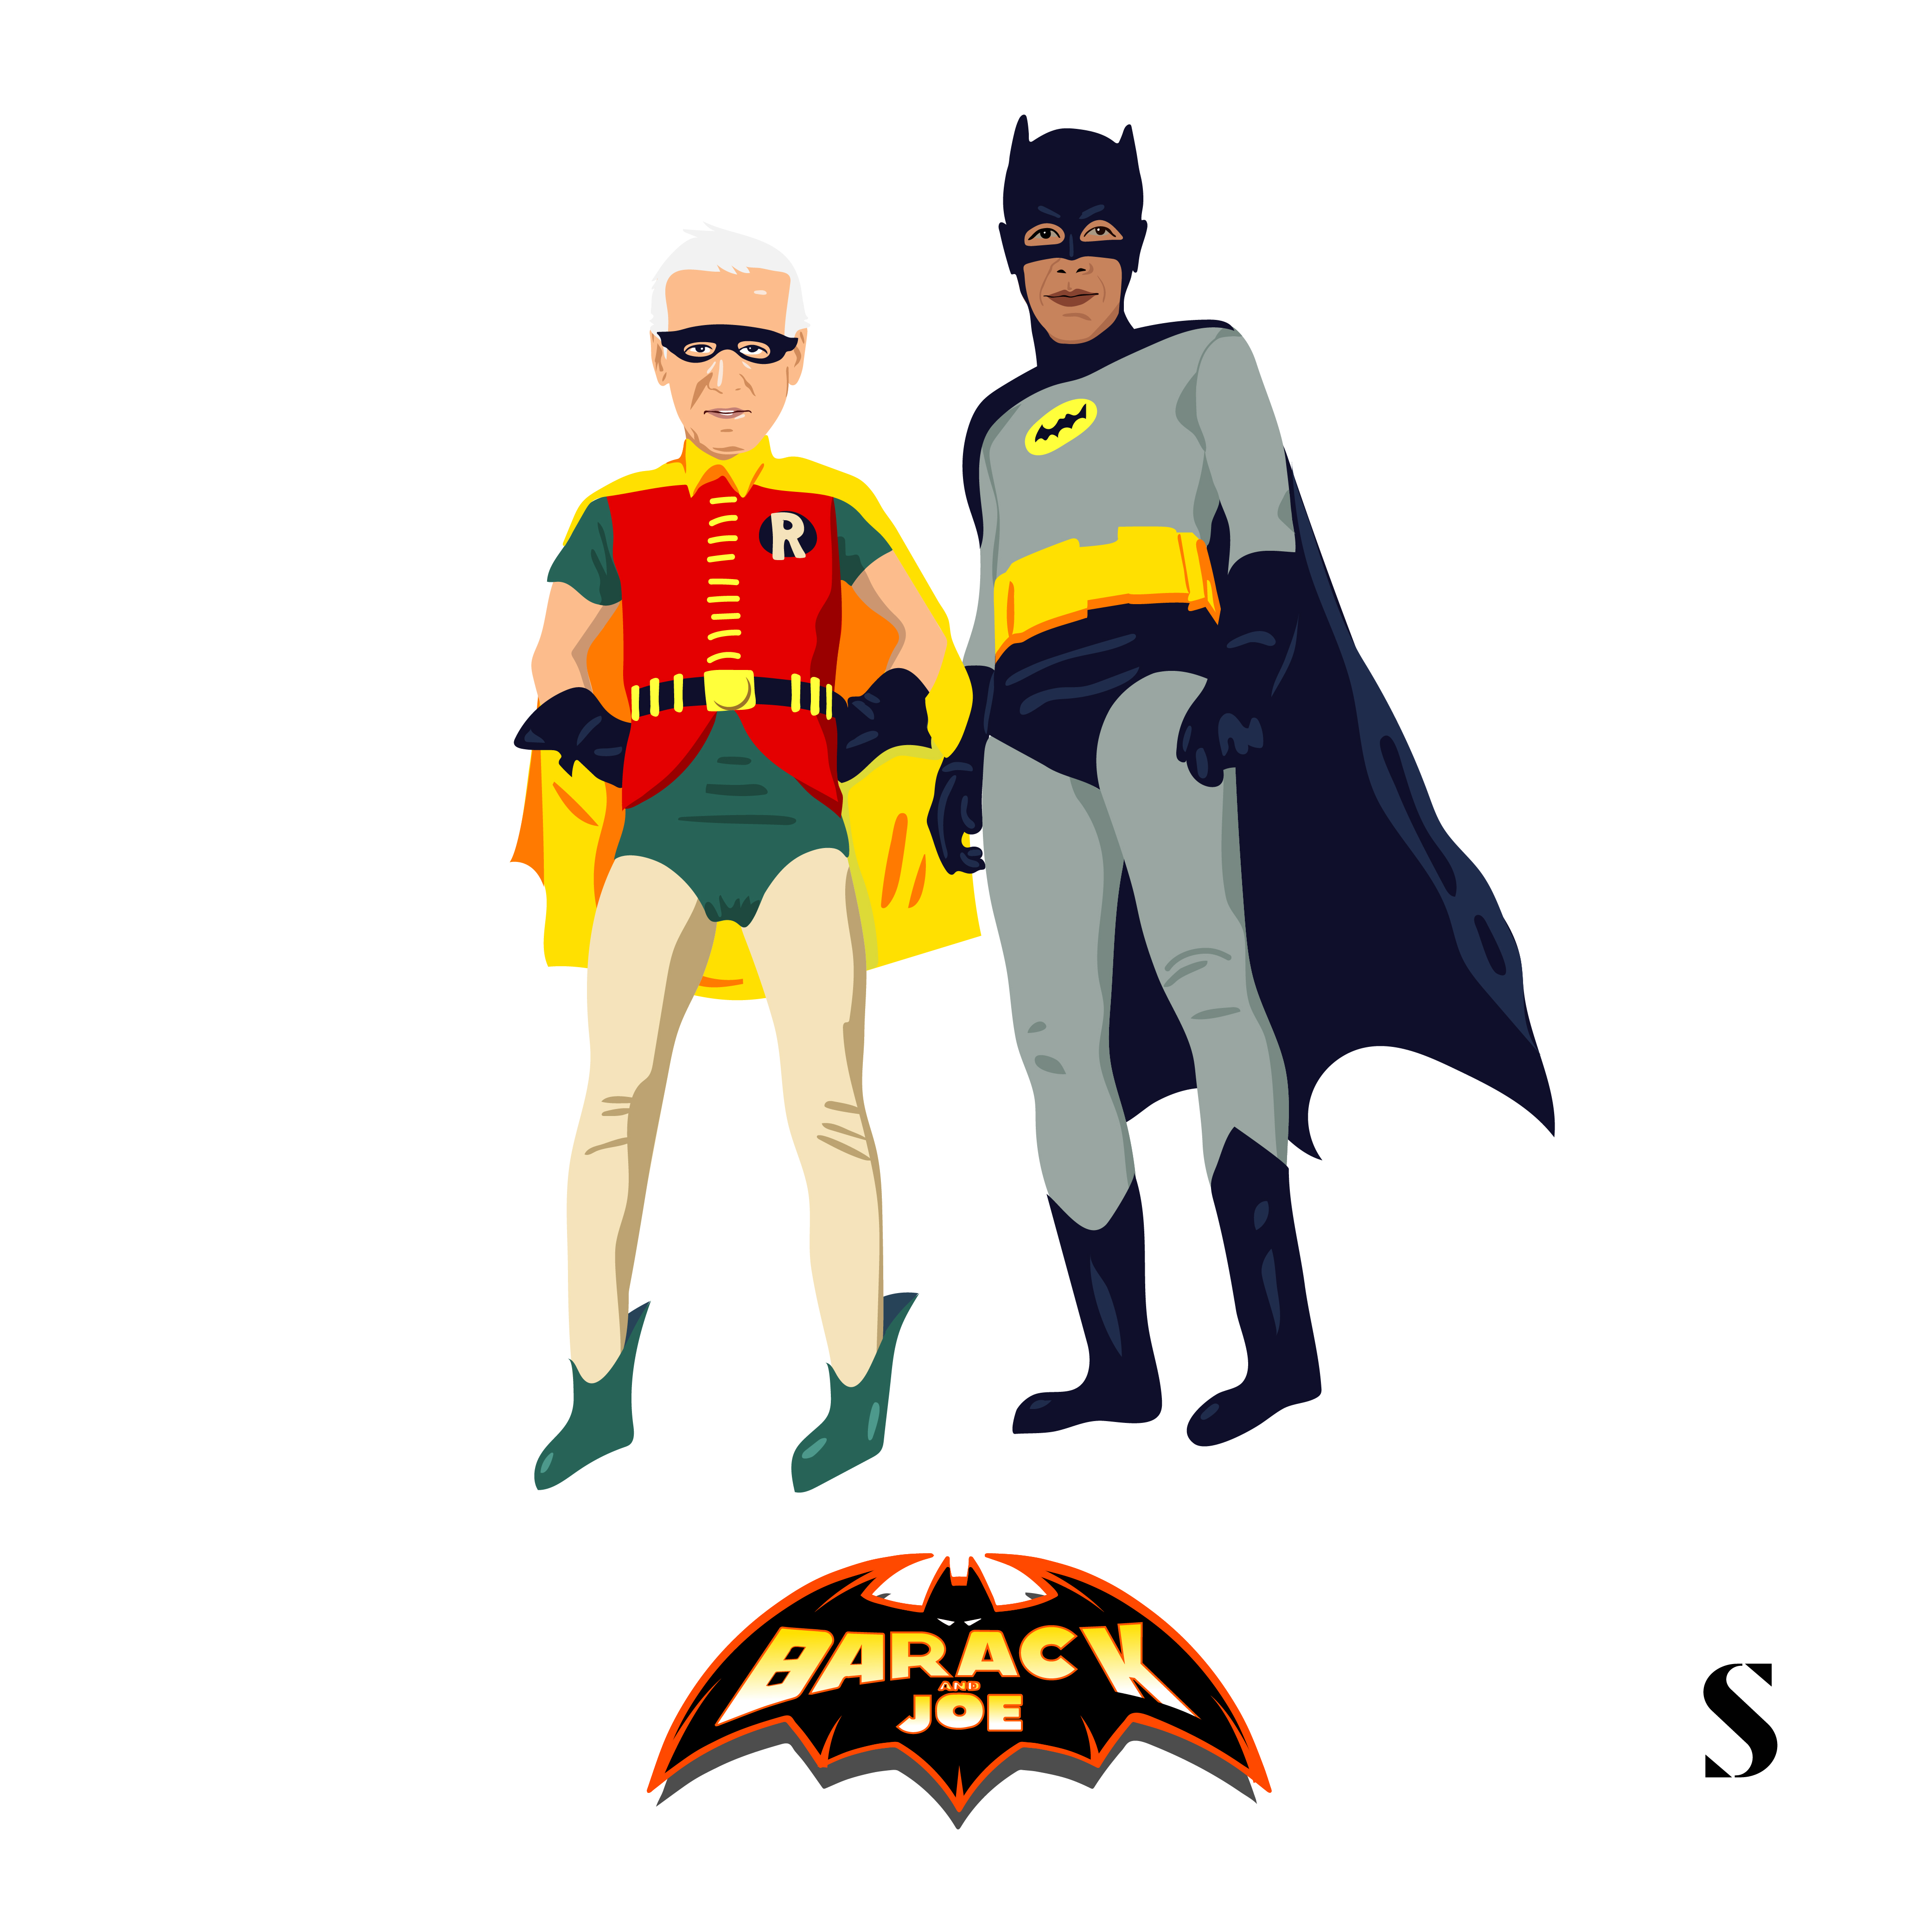 batman and robin joebama by stylight